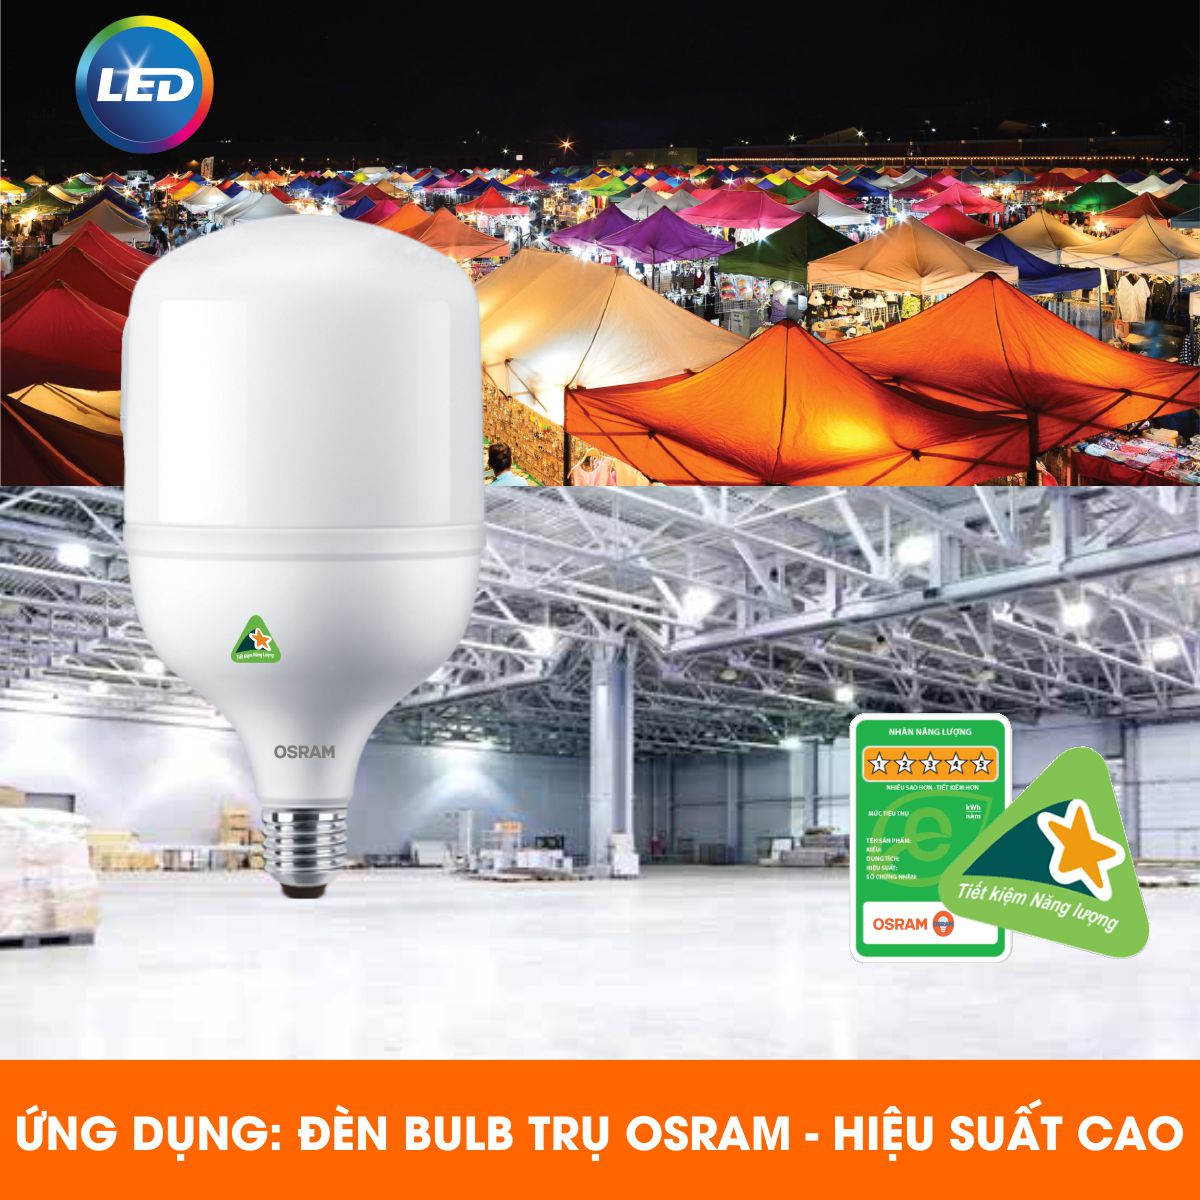 Bóng đèn LED trụ T-Bulb OSRAM E27 - Tiết kiệm điện, độ sáng cao, chất lượng ánh sáng vượt trội, bảo vệ quá nhiệt, chống xung 2.5Kv - Hàng Chính Hãng